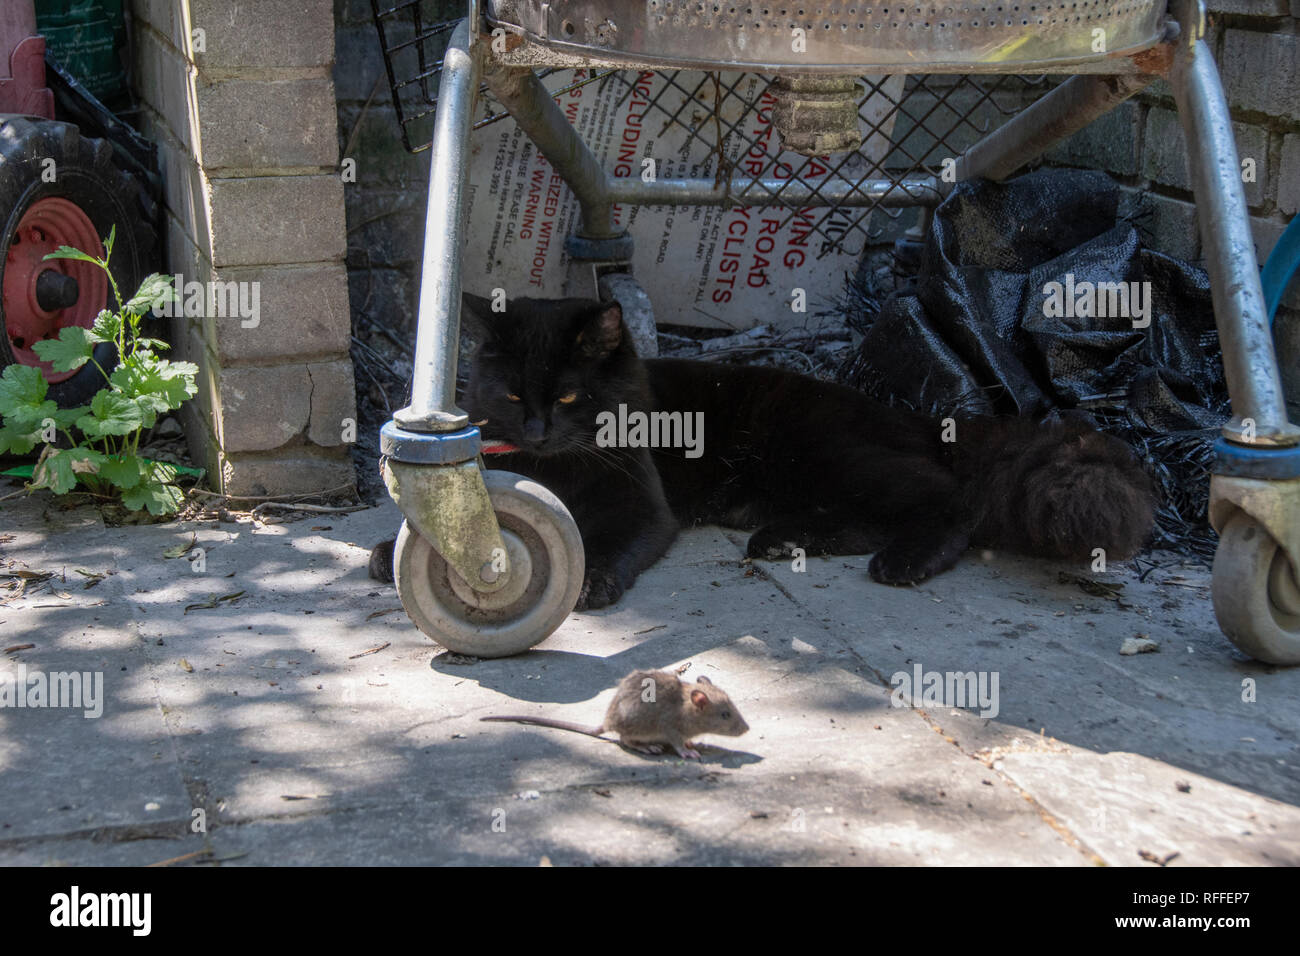 Katz und Maus: Ein schwarzer Kater verweilt entfernt ein Sommertag Jagd und spielt mit seinen Fang, eine gemeinsame Maus Stockfoto